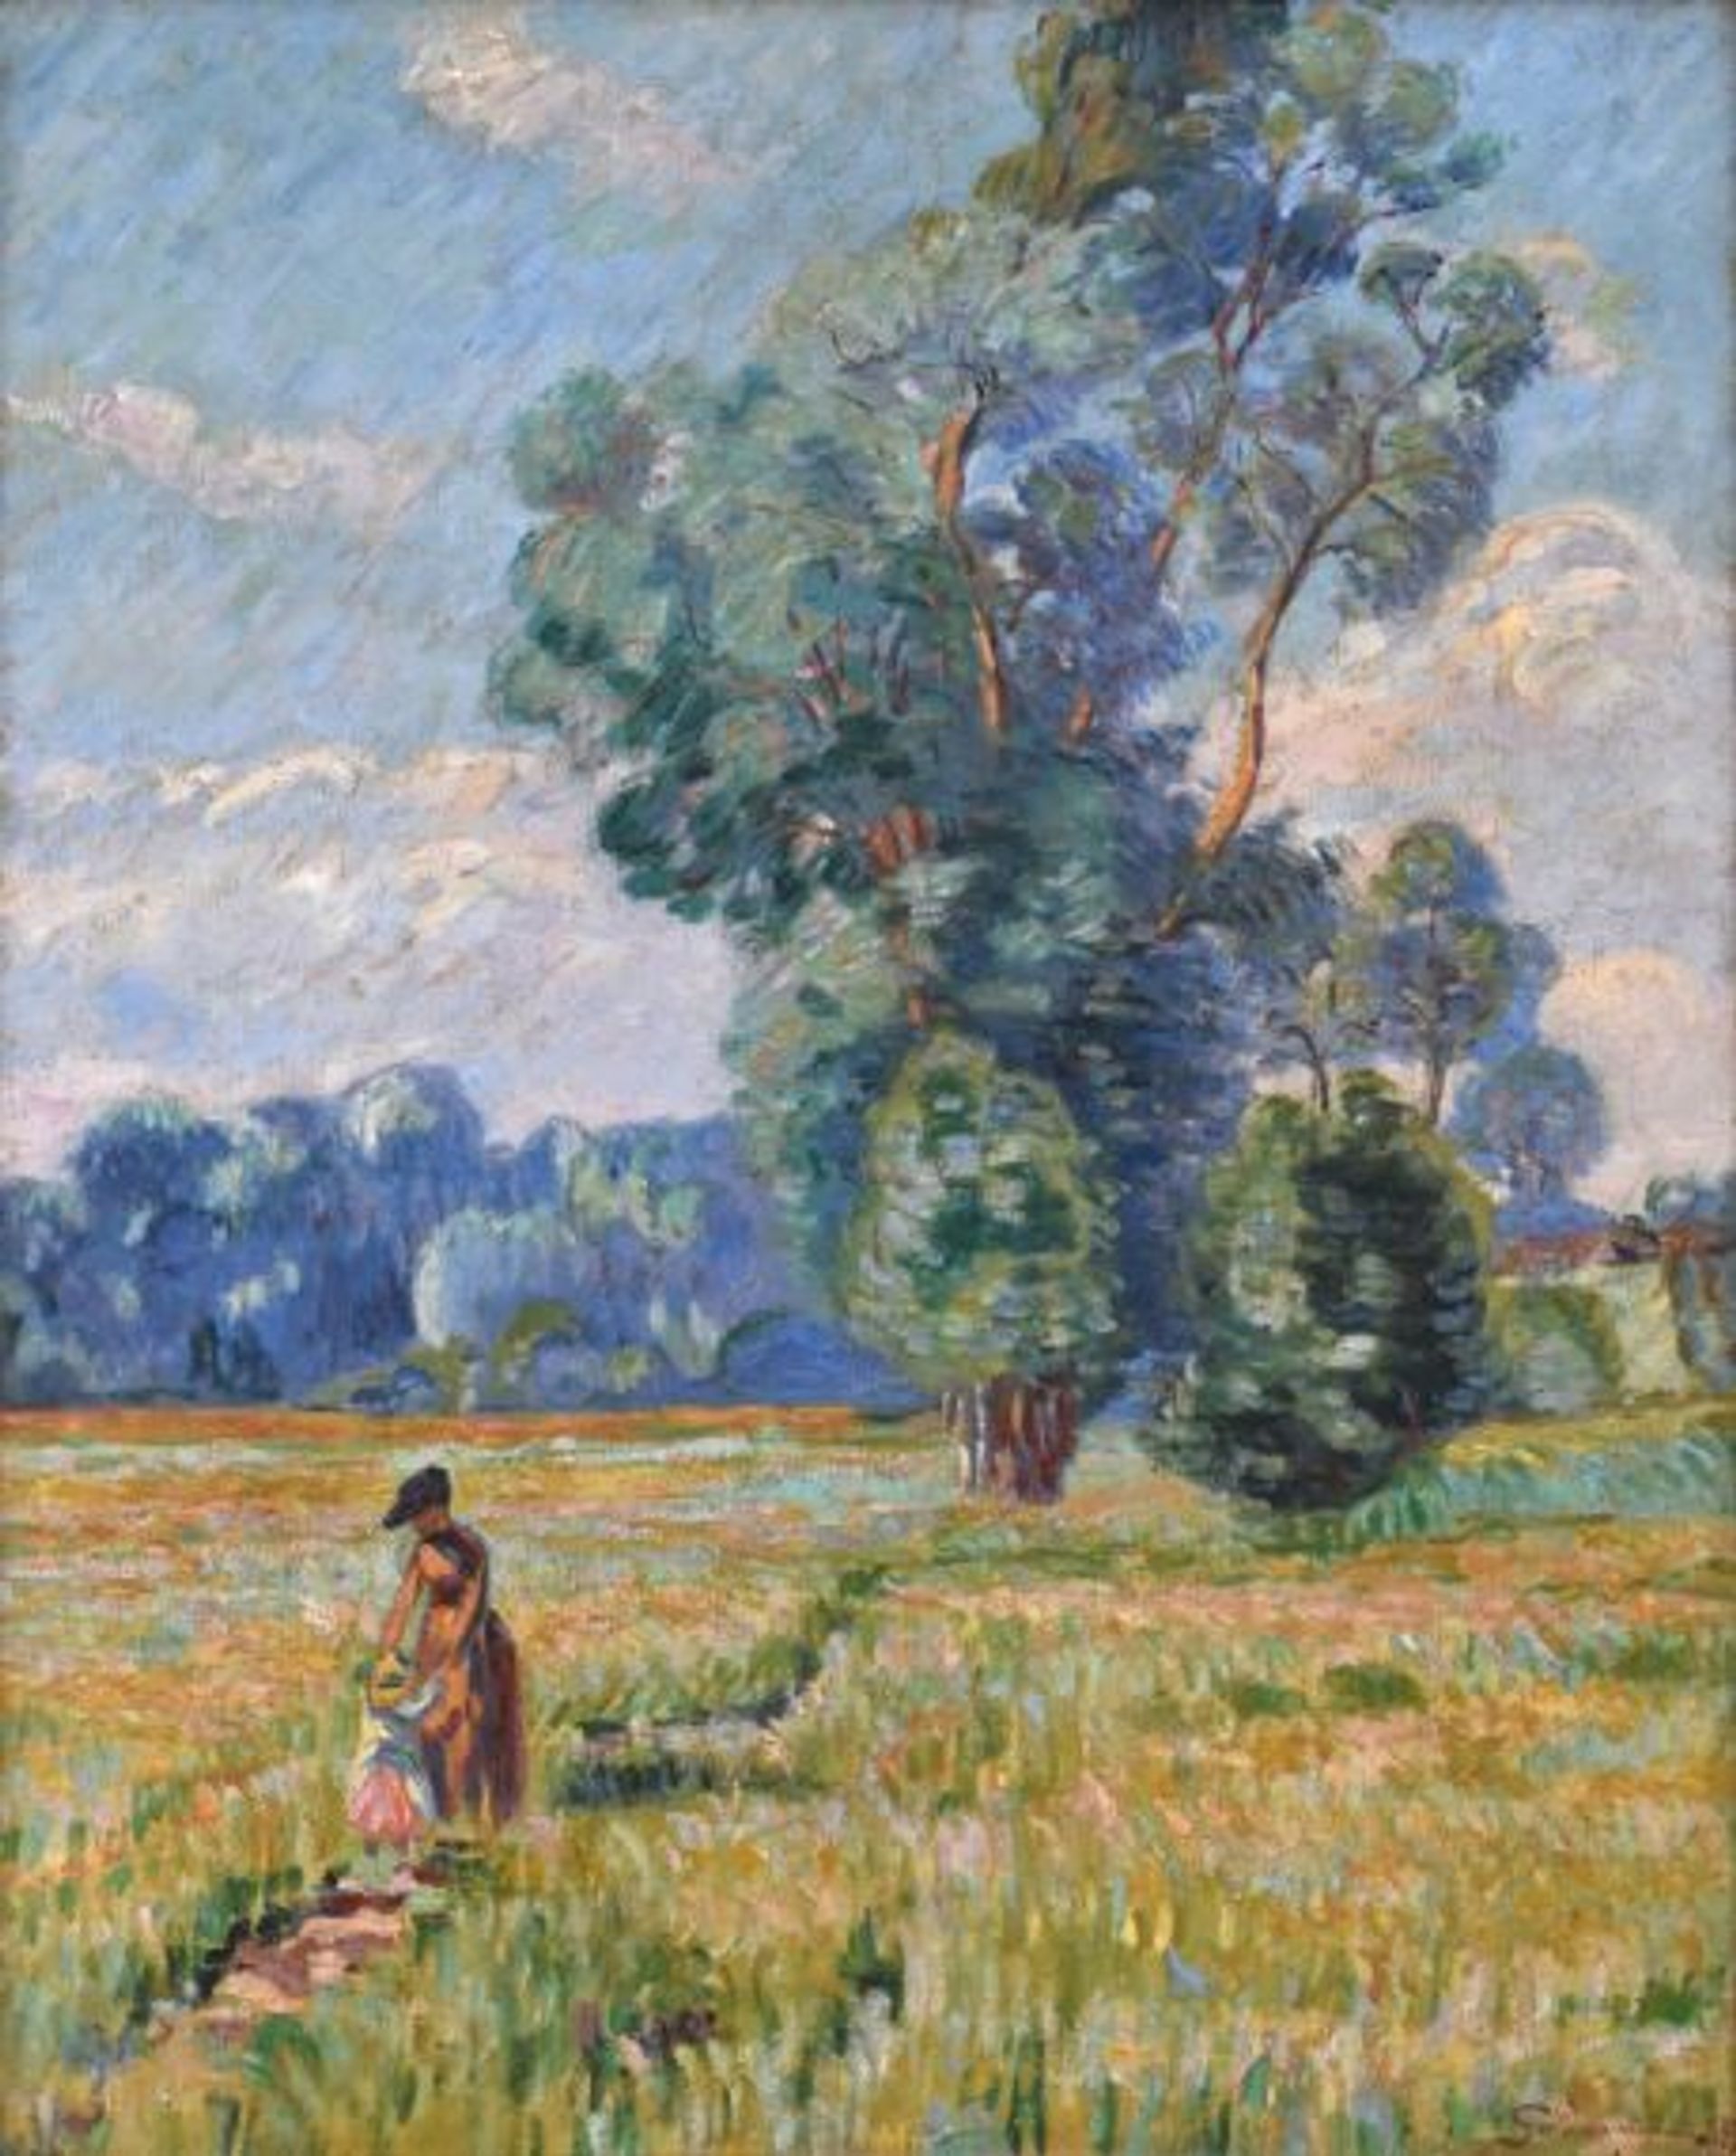 Armand Guillaumin, Femme et enfant dans un paysage, 1890, huile sur toile, est. 40 000-60 000 euros. 

© Yann Le Mouel